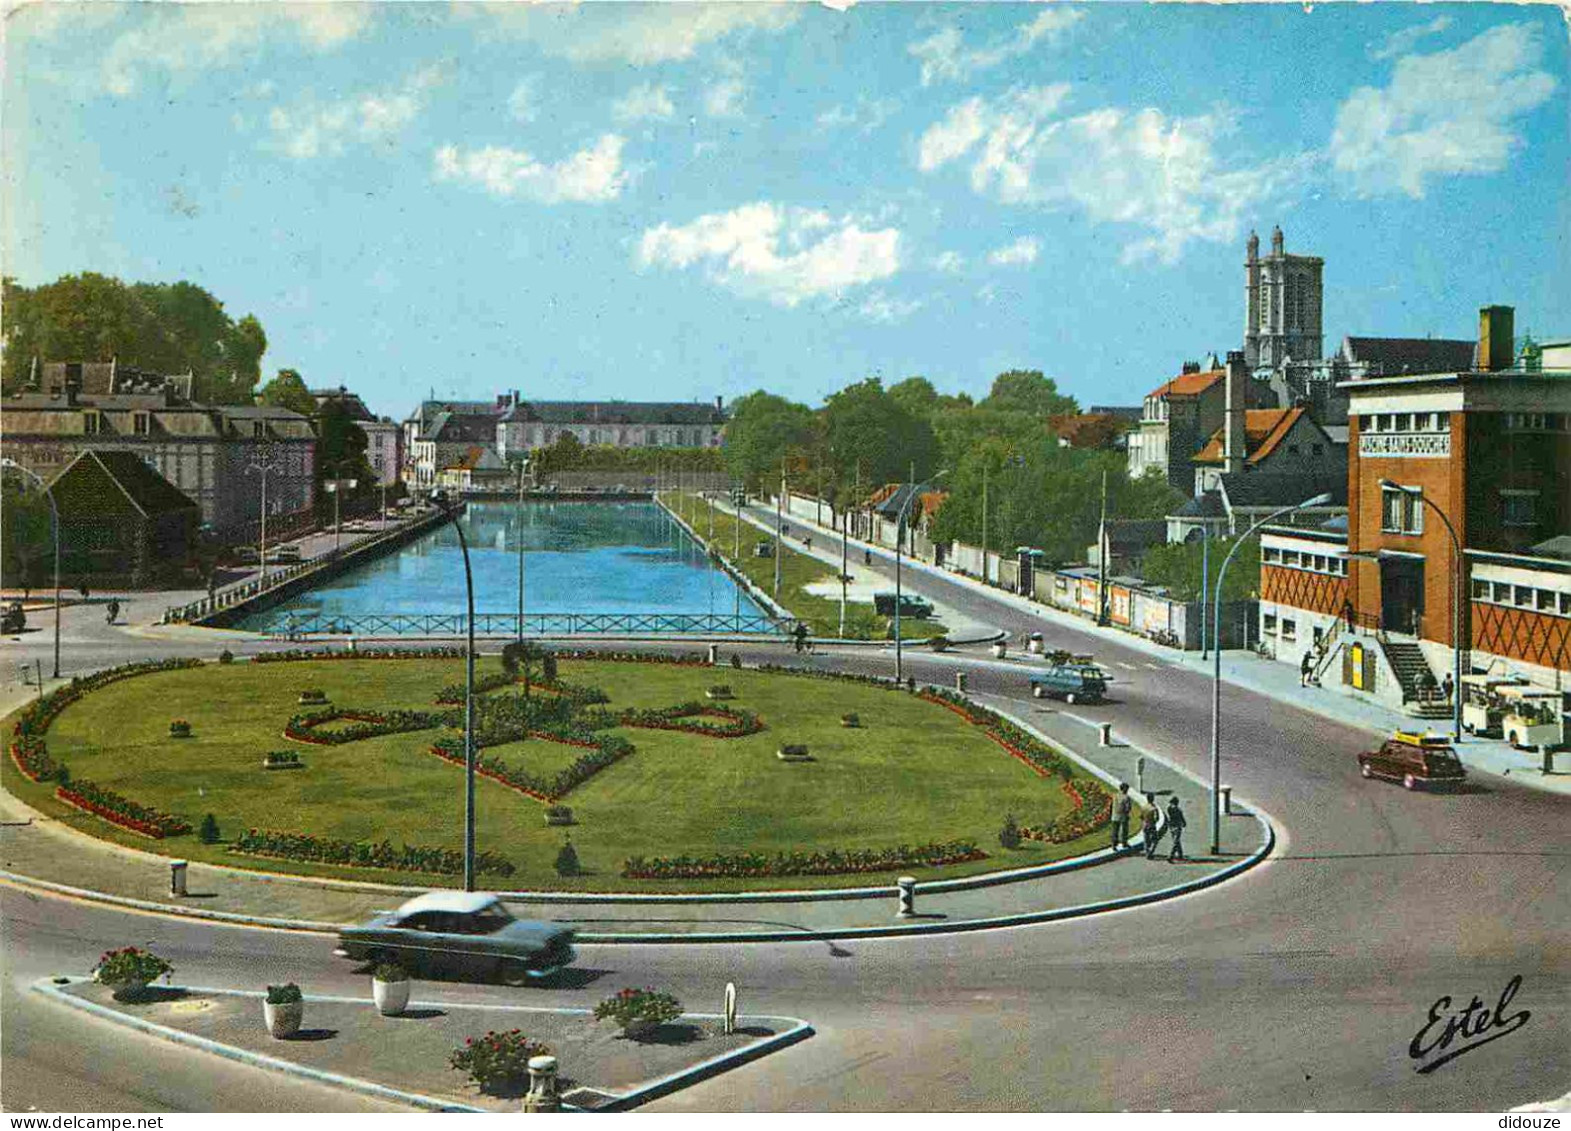 10 - Troyes - Place Du Vouldy - Le Canal De La Haute-Seine Et La Piscine - Au Fond La Tour De La Cathédrale Saint-Pierre - Troyes